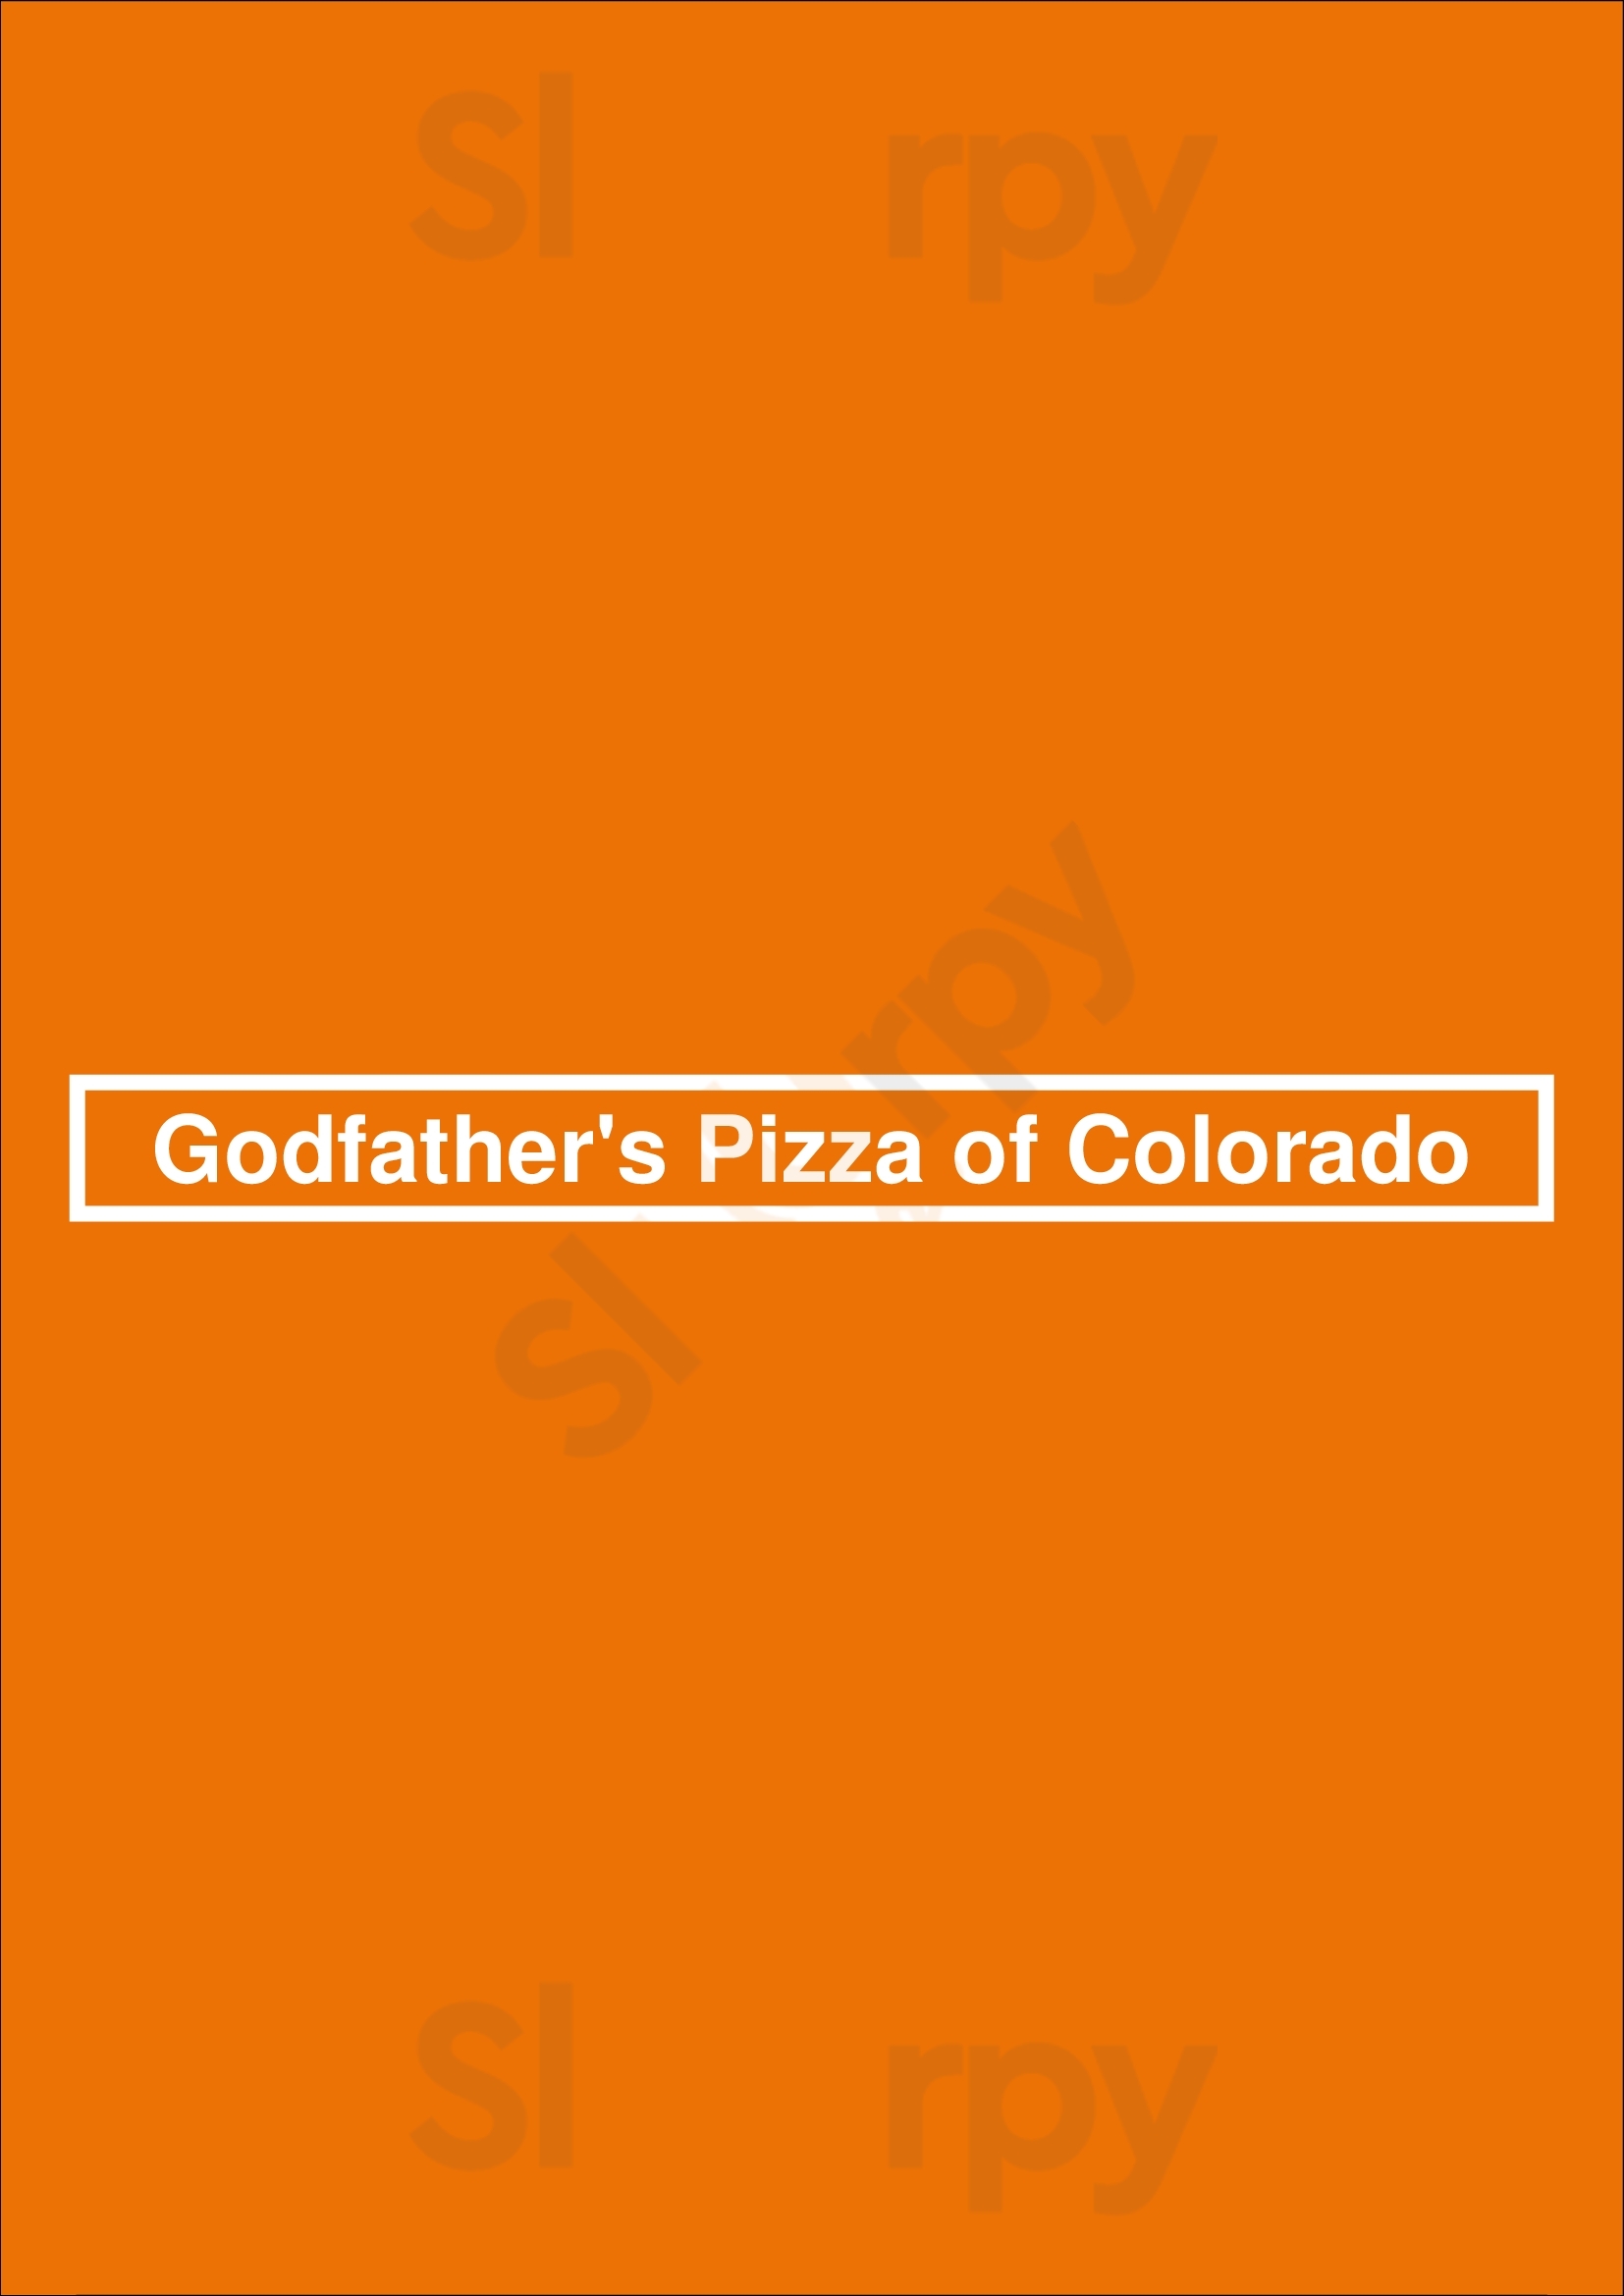 Godfather's Pizza Of Colorado Denver Menu - 1